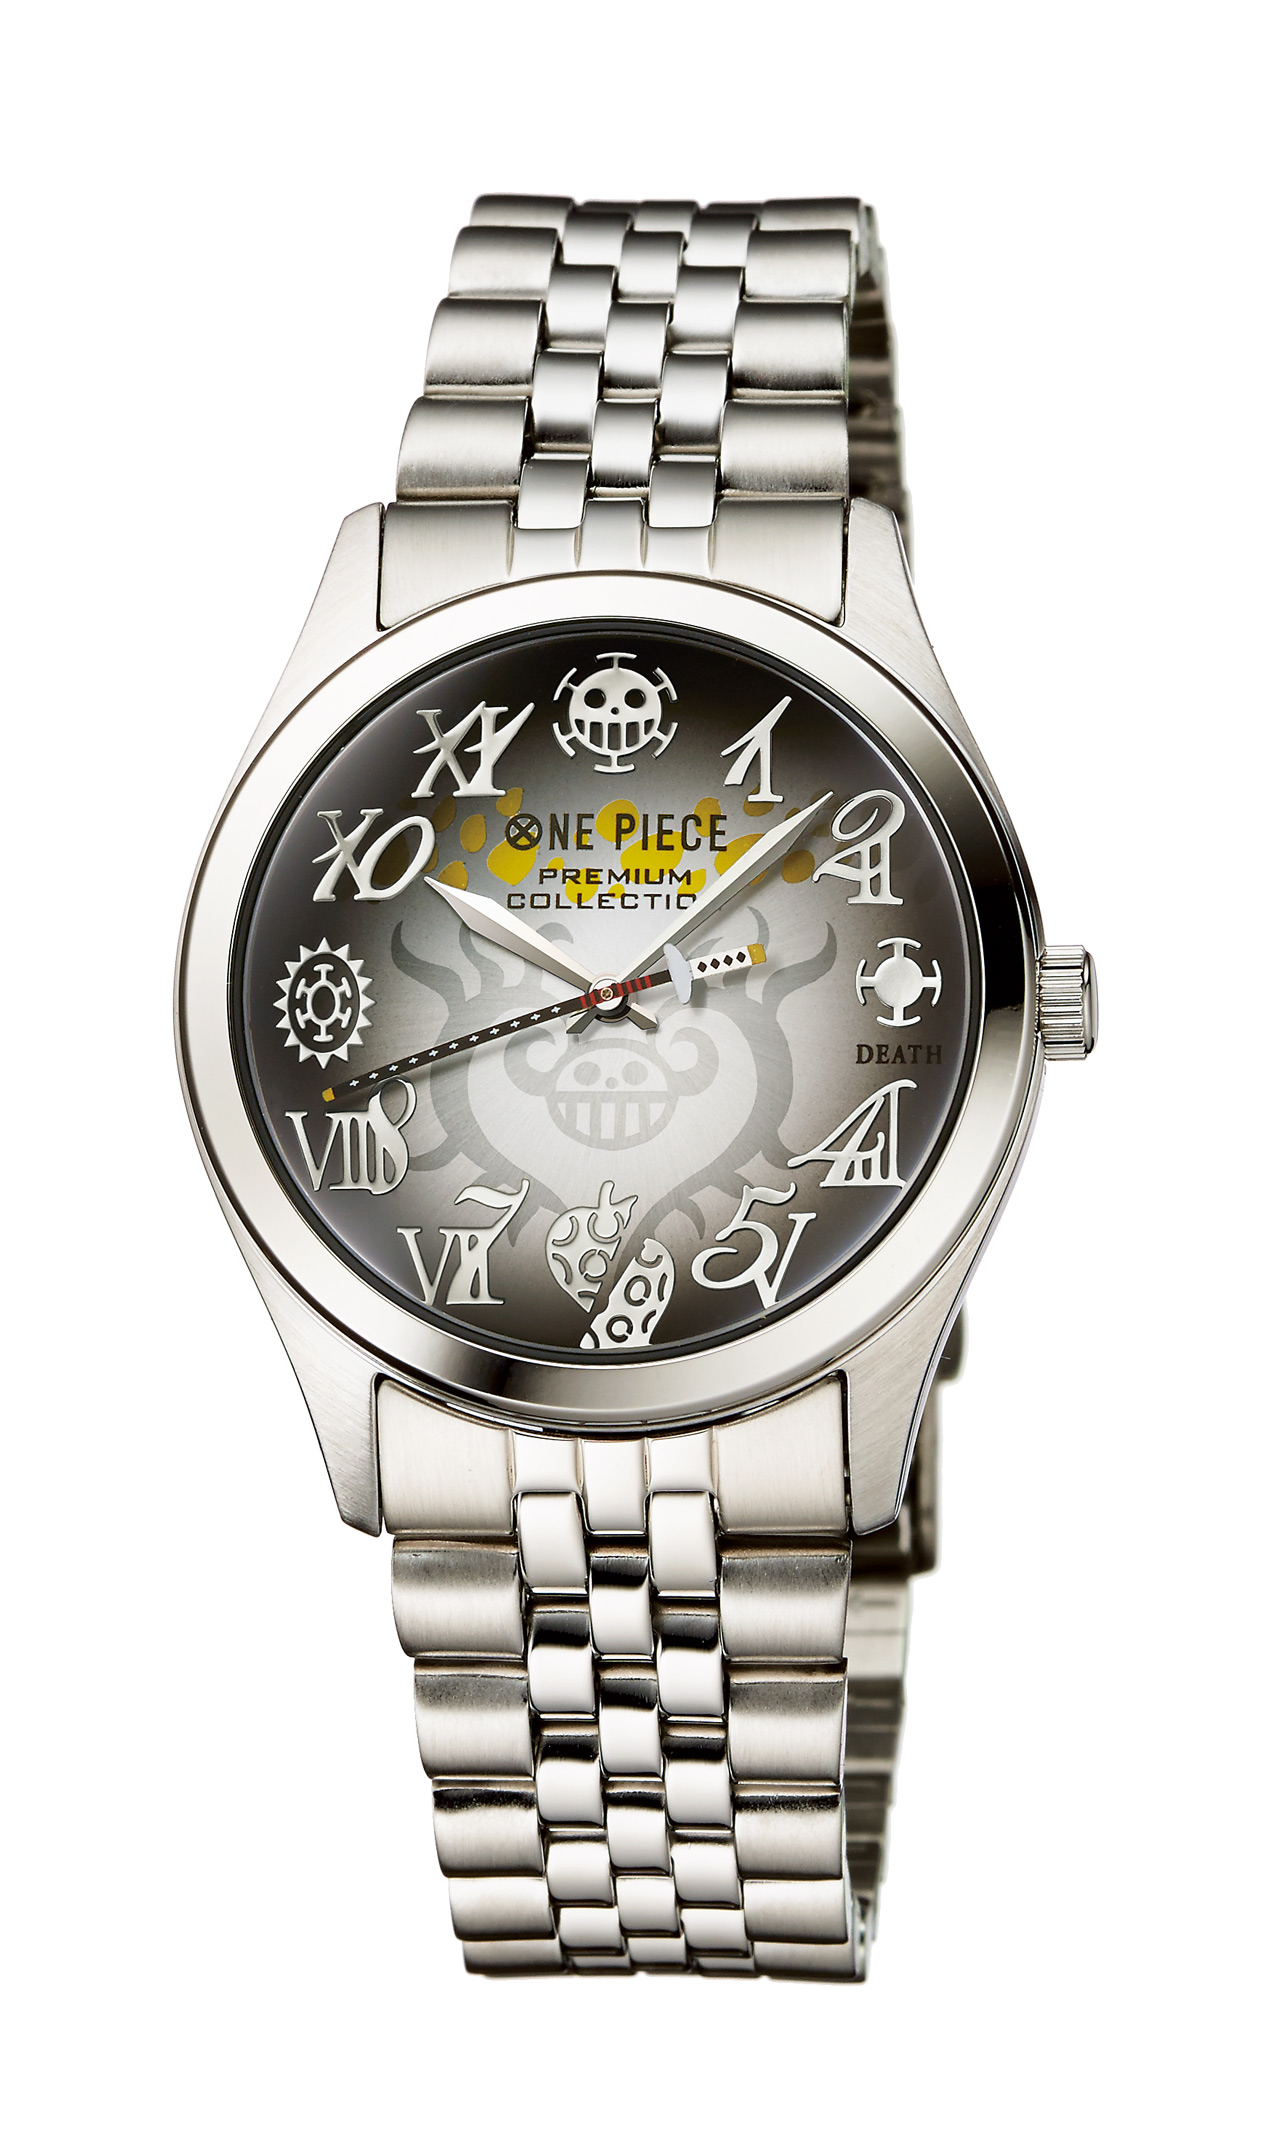 ファン必携 ワンピース トラファルガー ロー の腕時計がかっこよすぎな件 オペオペの実をイメージしたオリジナルデザインだぞぉ ロケットニュース24